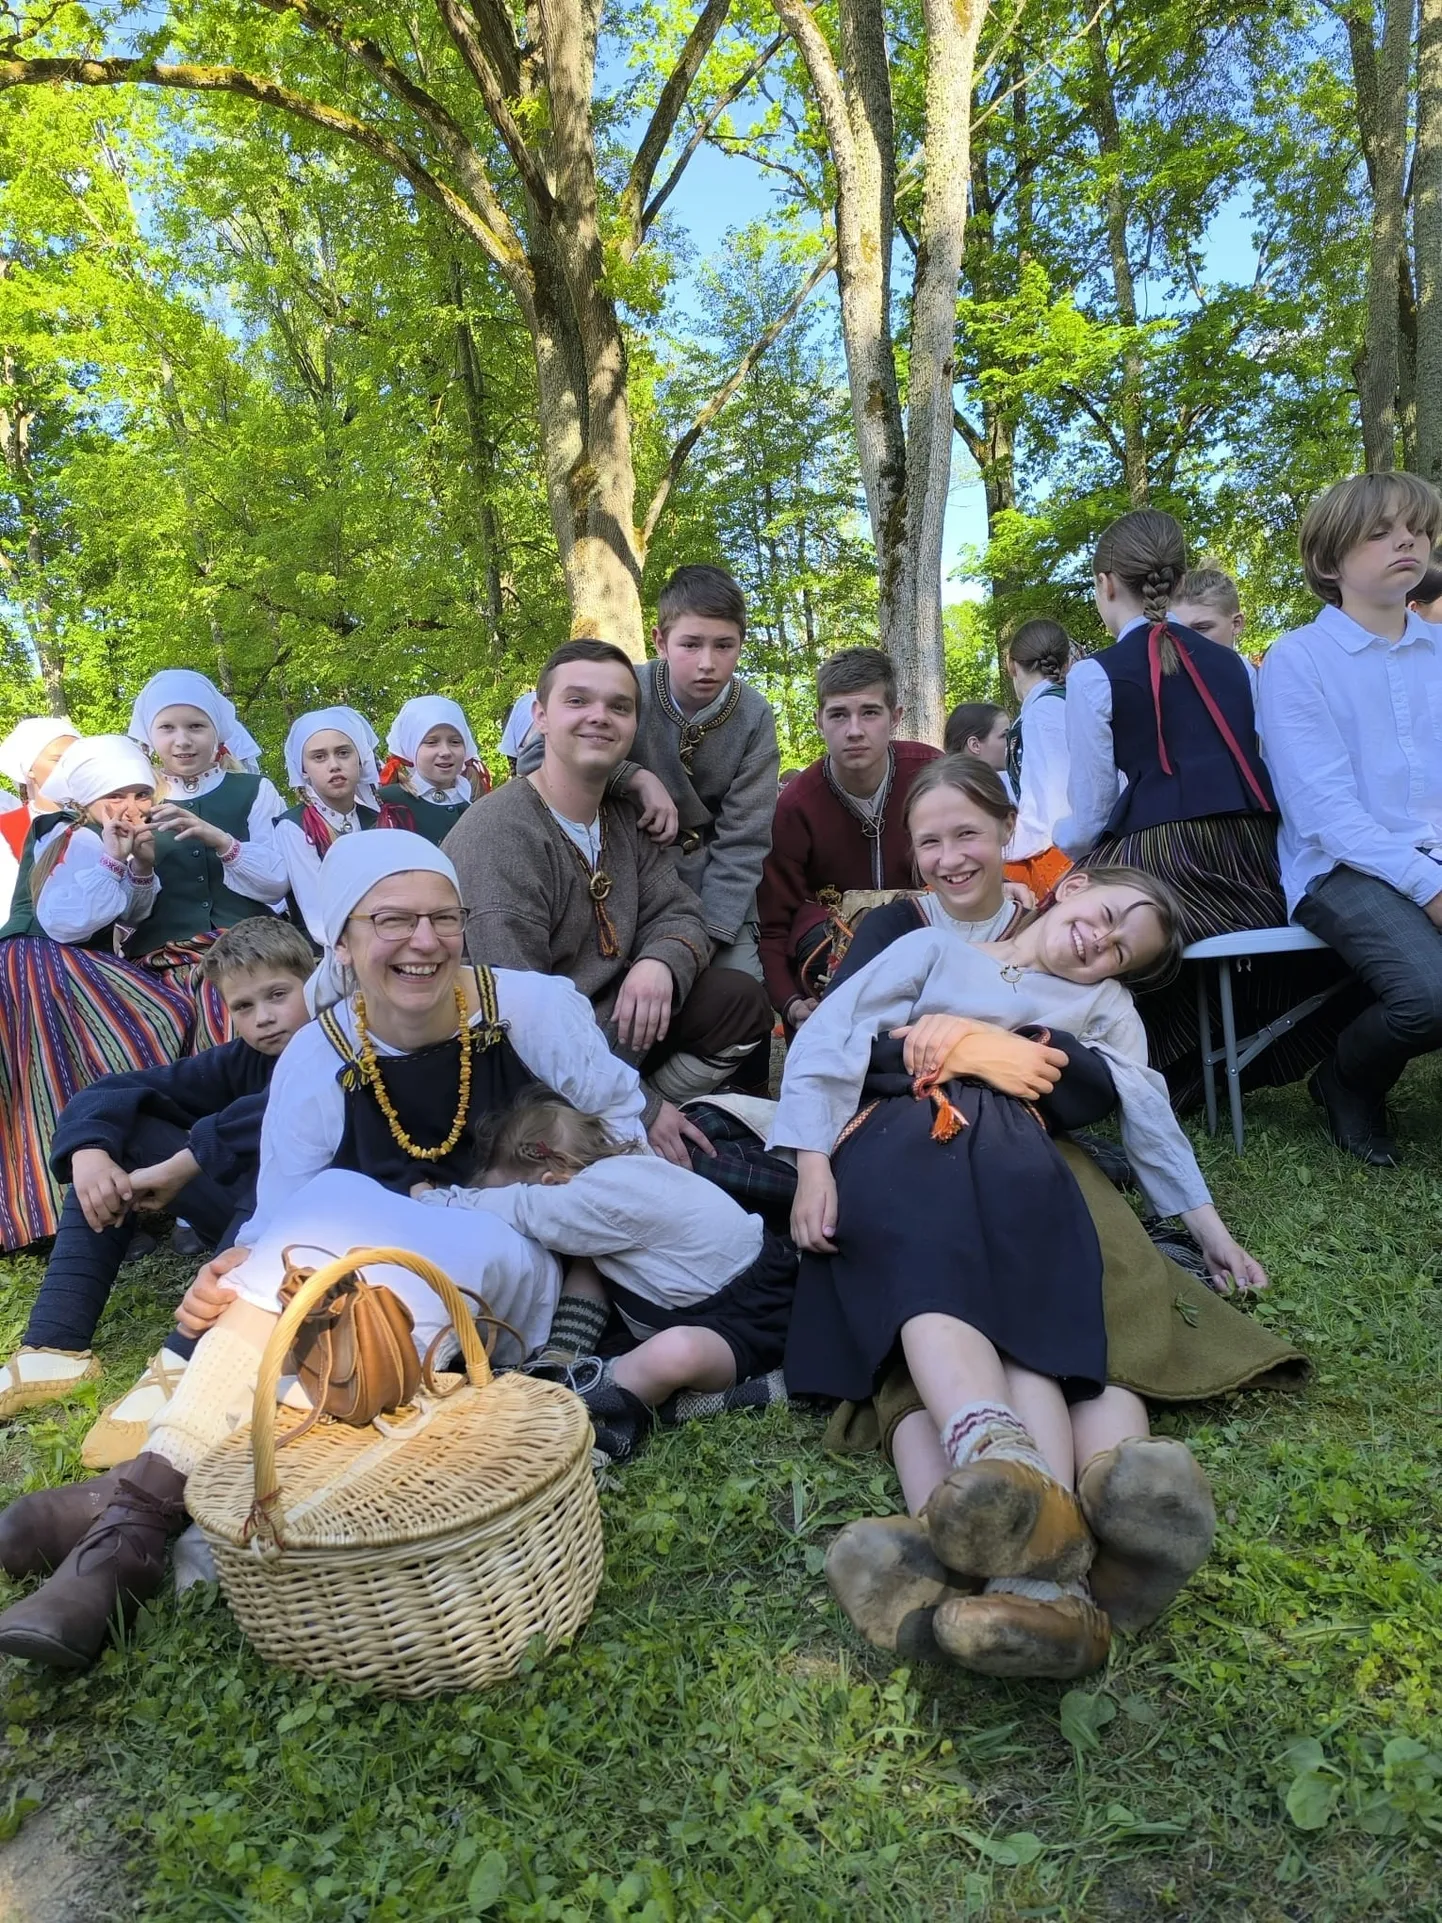 Lēdurgas kultūras nama folkloras kopa "Putni" festivāla "Pulkā eimu, pulkā teku" 40. gadskārtā, kura 18. un 19. maijā norisinājās Jēkabpils novada Zasā.